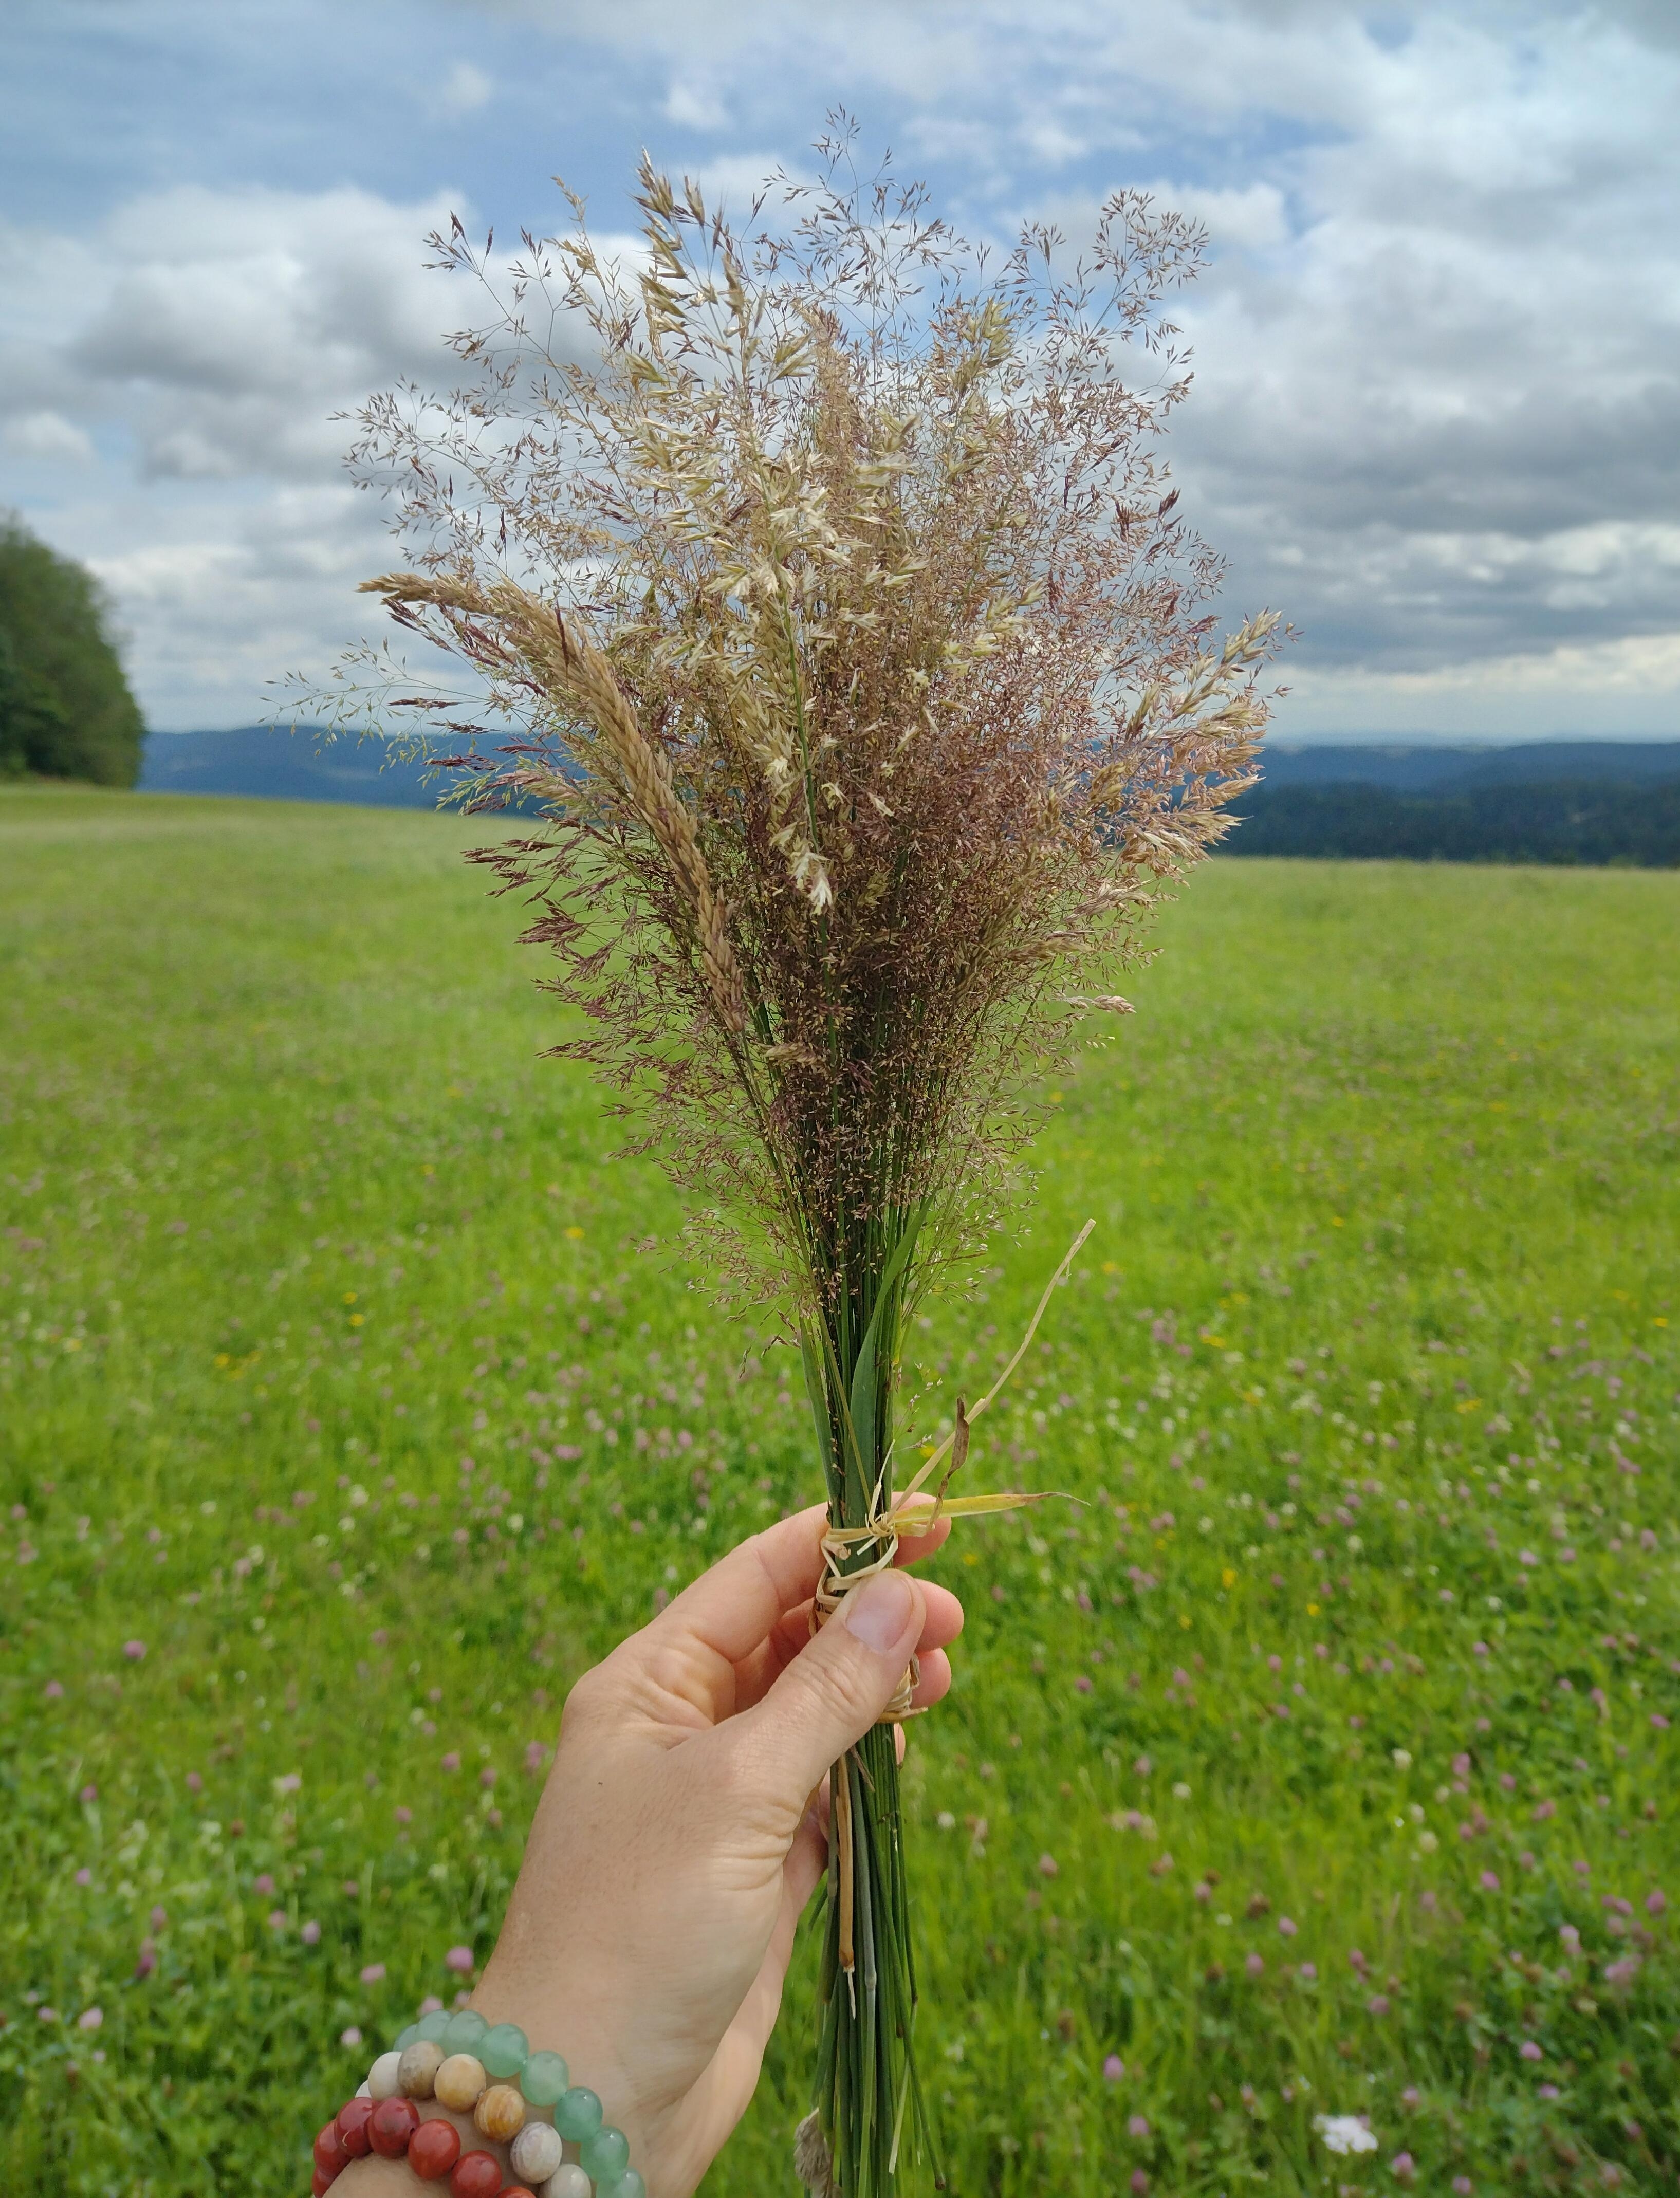 Fresh grass friday 😜
#gras #pflanzen #schwarzwald 